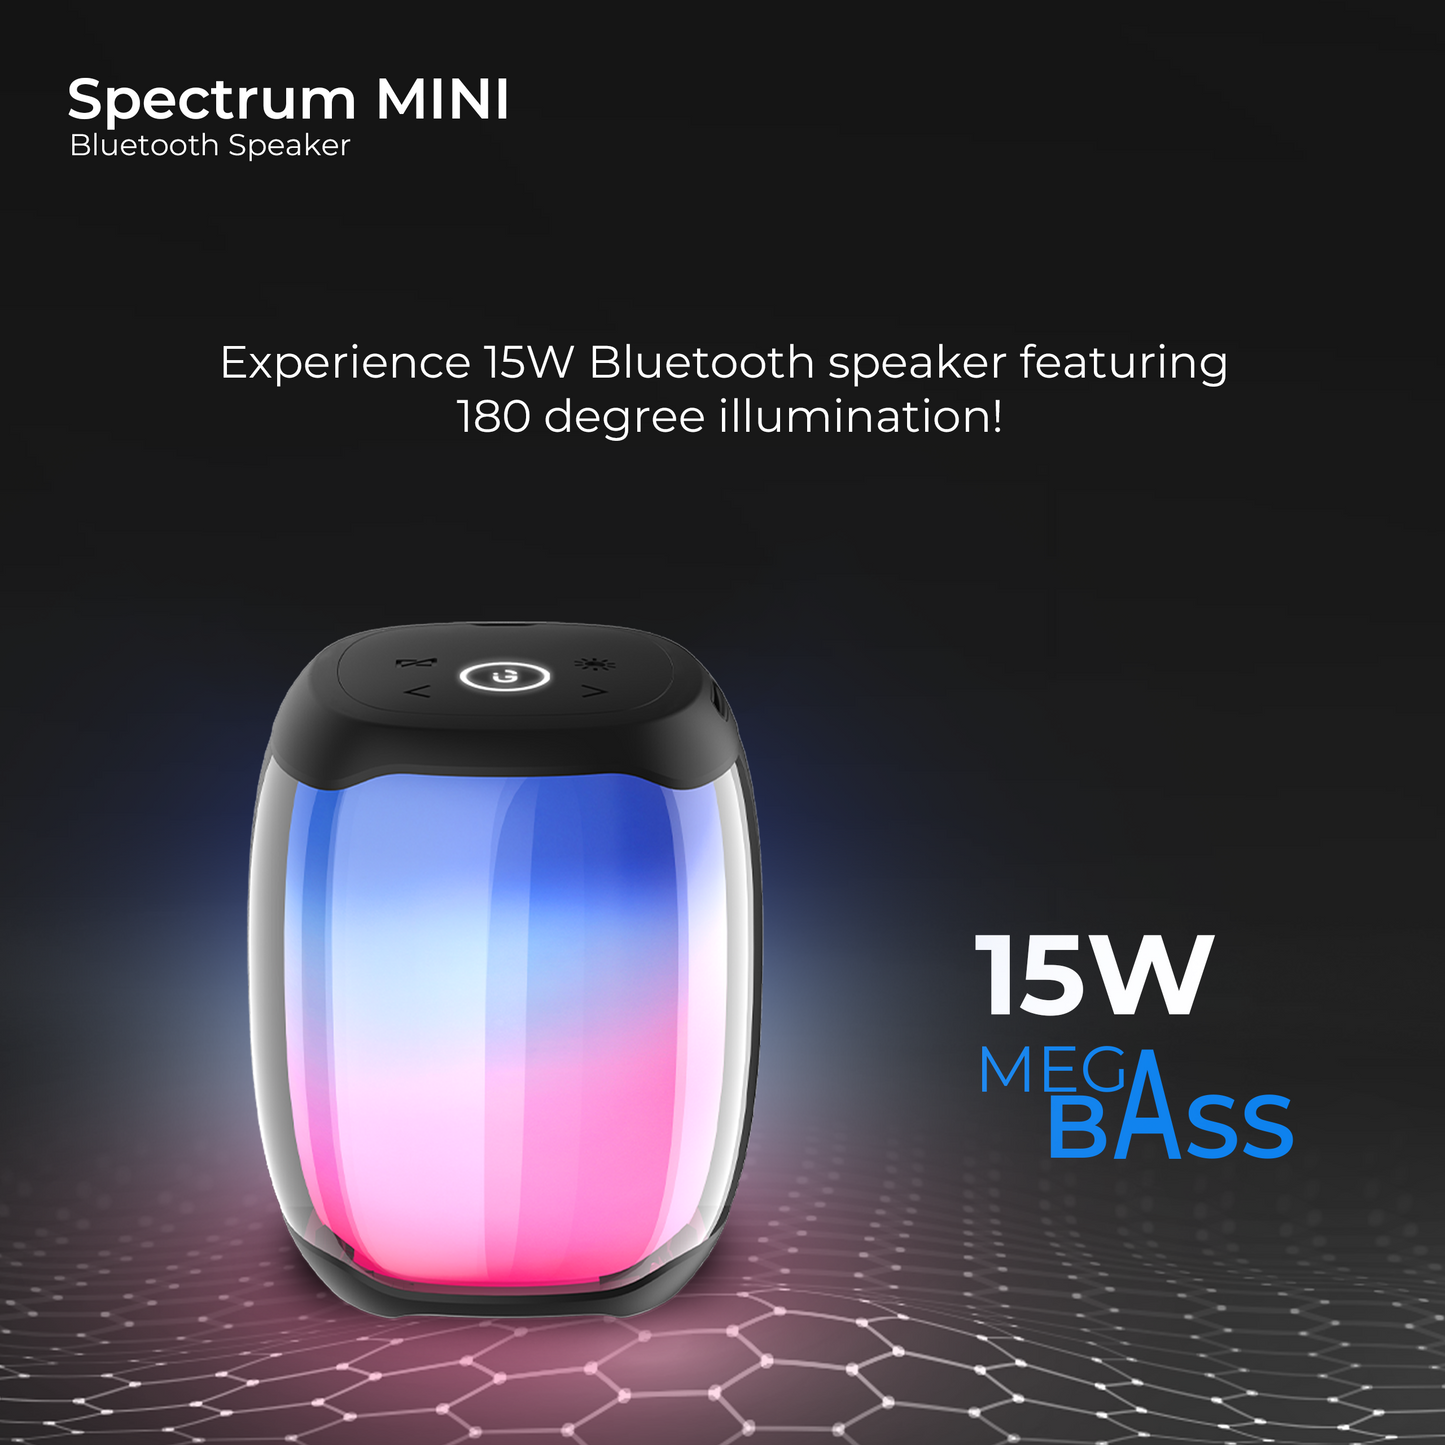 Spectrum mini